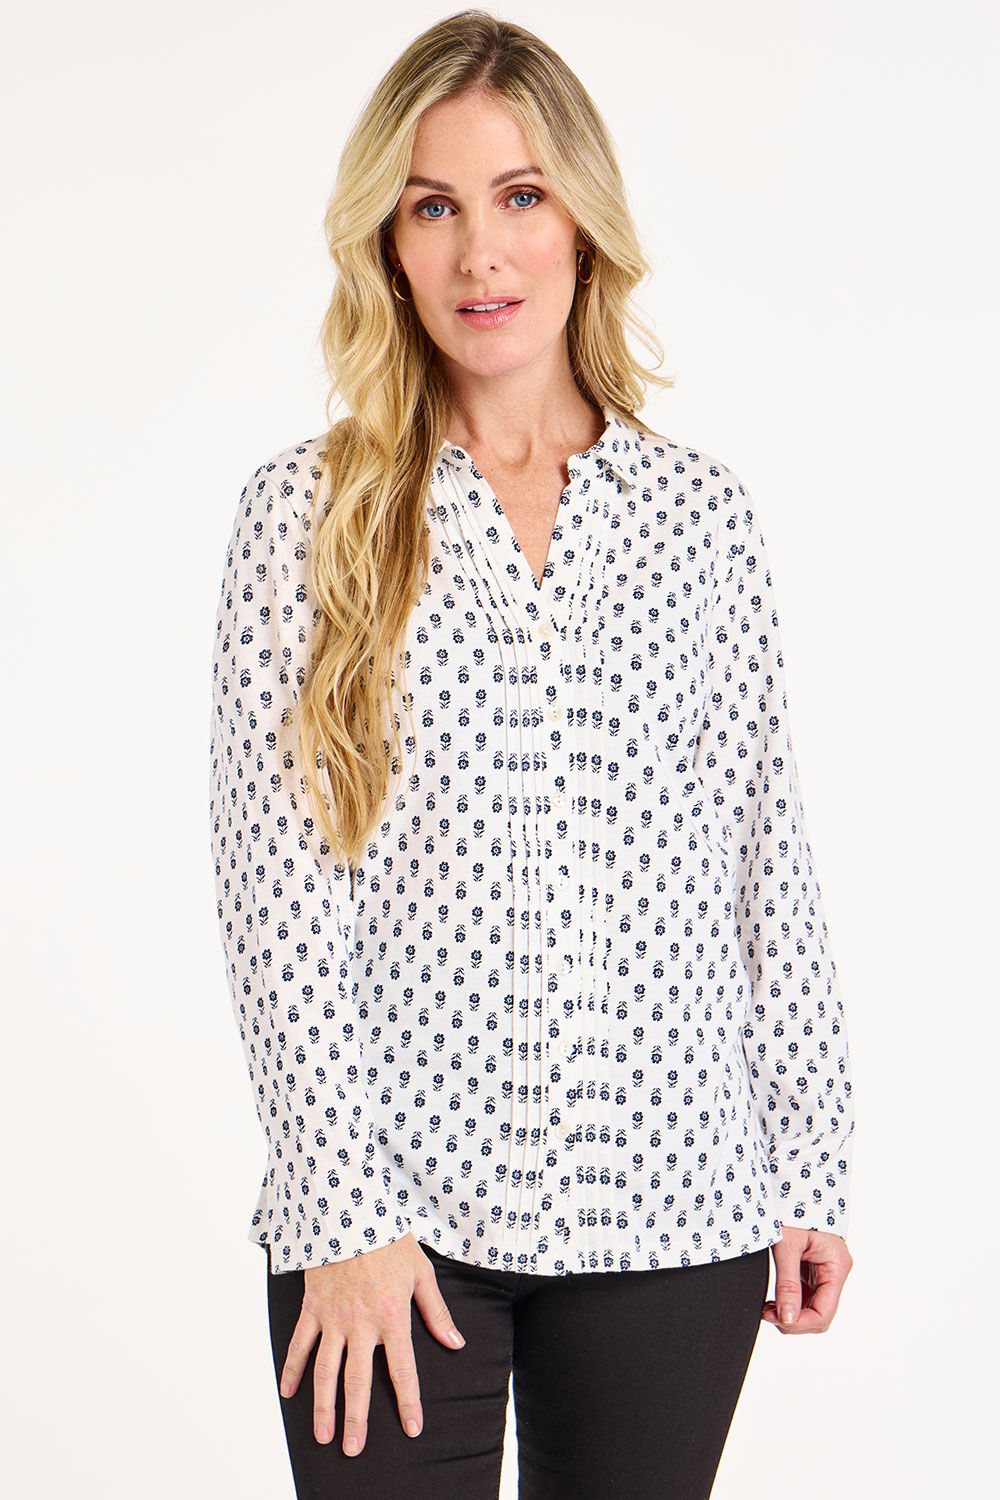 Bonmarche White/grey Long Sleeve Floral Foulard Print Jersey Shirt, Size: 12